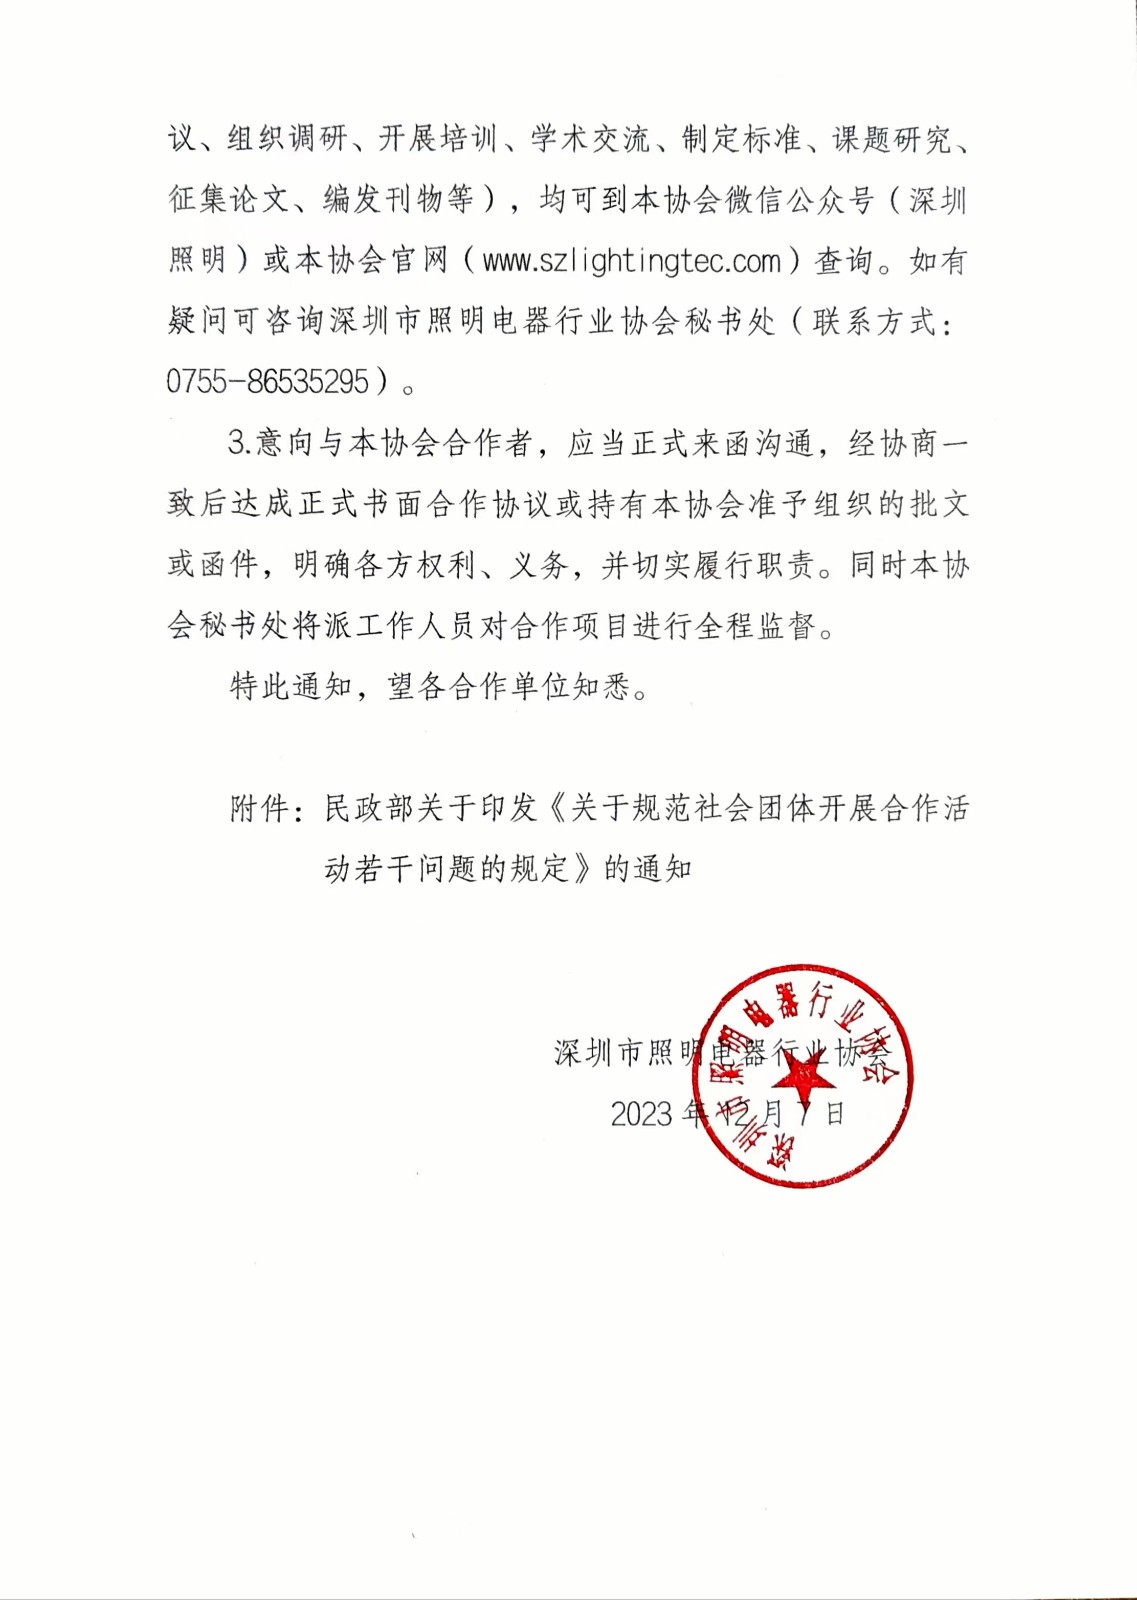 关于规范深圳市照明电器行业协会合作活动的通知2.jpg